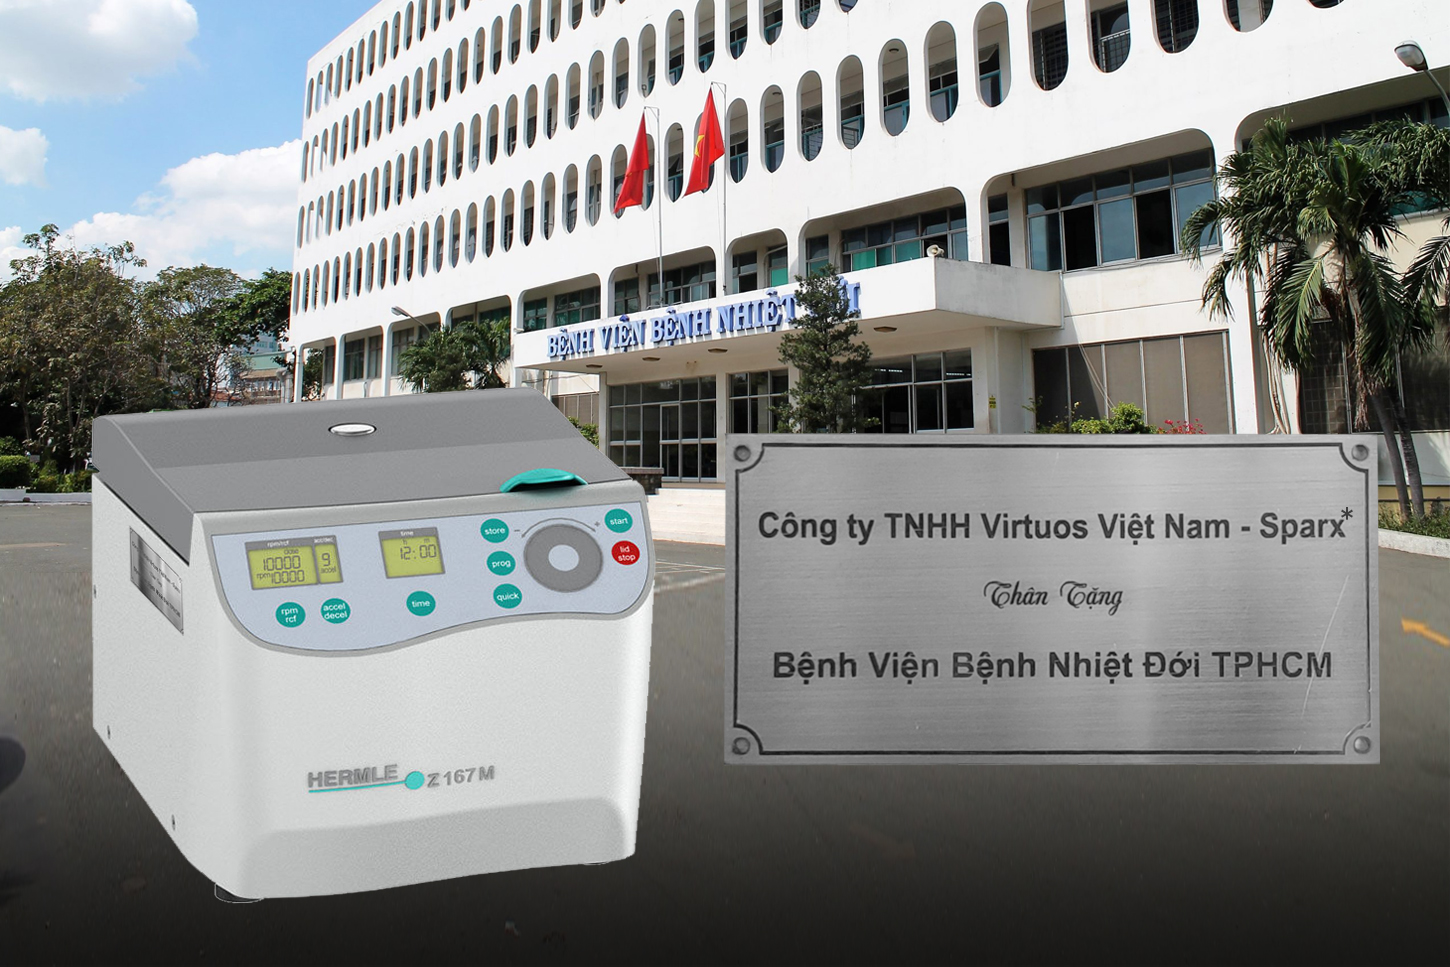 Sparx* – Virtuos Vietnam chung tay cùng Việt Nam chống COVID-19